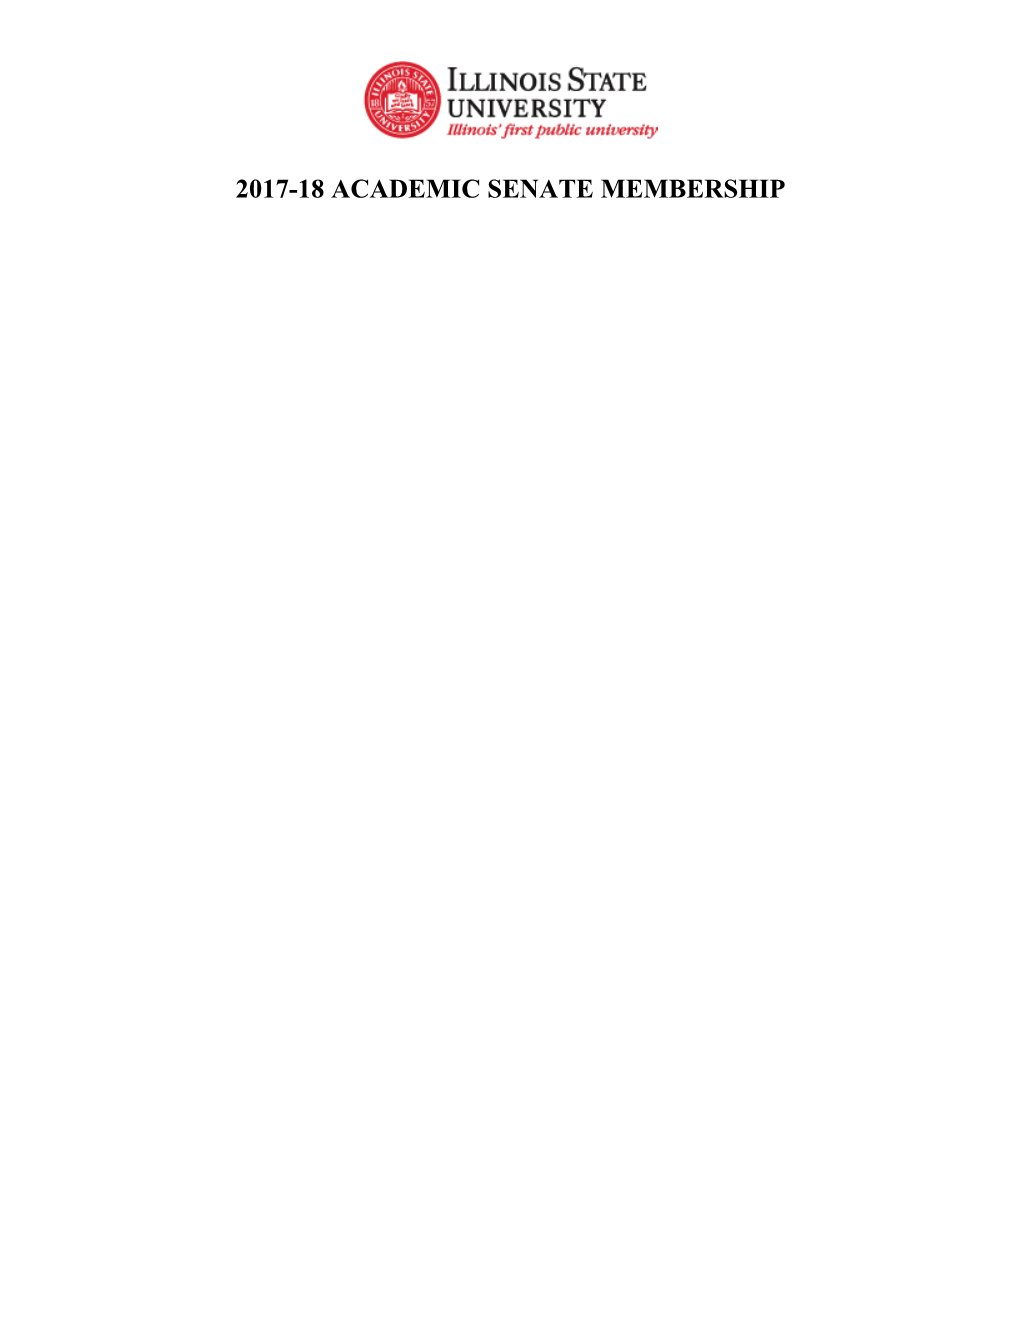 2017-18 Academic Senate Membership